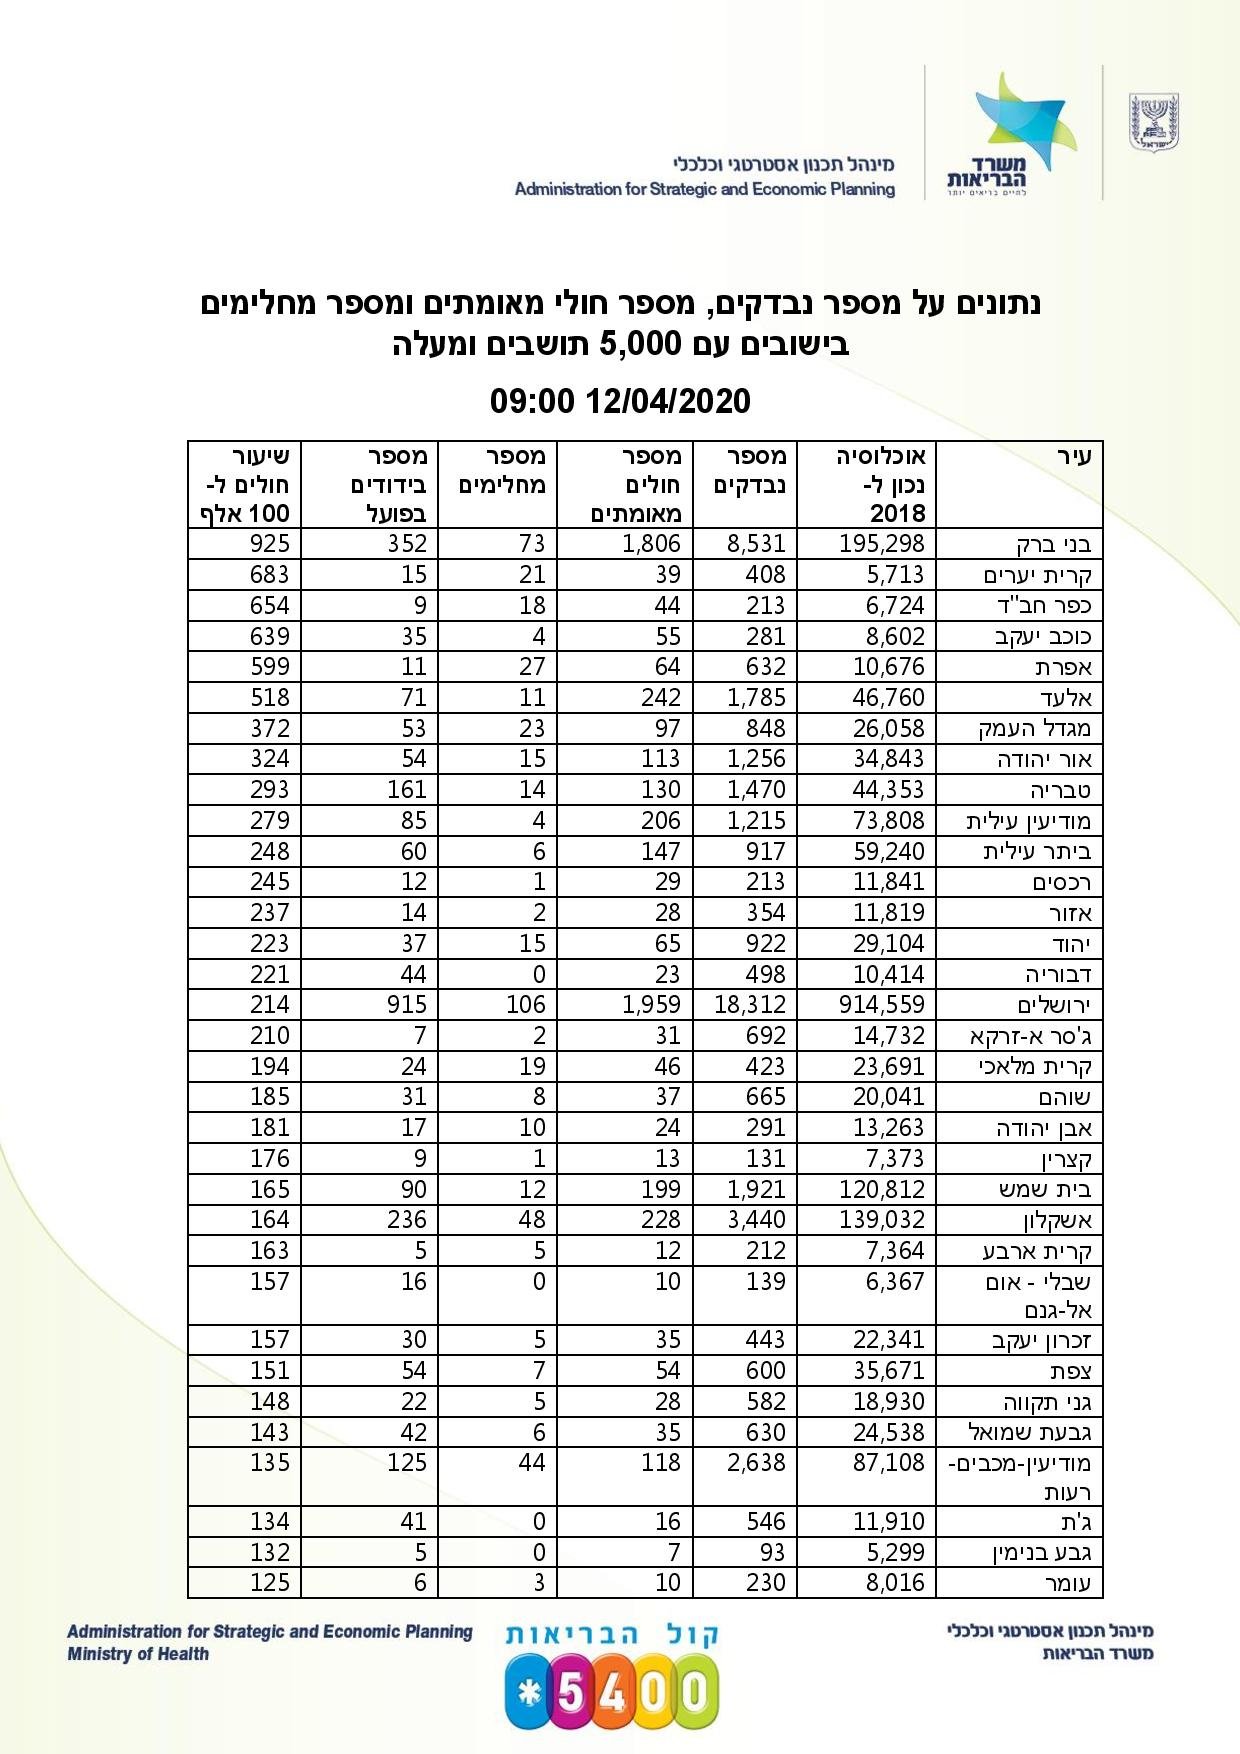 وفاة الحاخام الأكبر السابق لإسرائيل يرفع الوفيات إلى 104-3